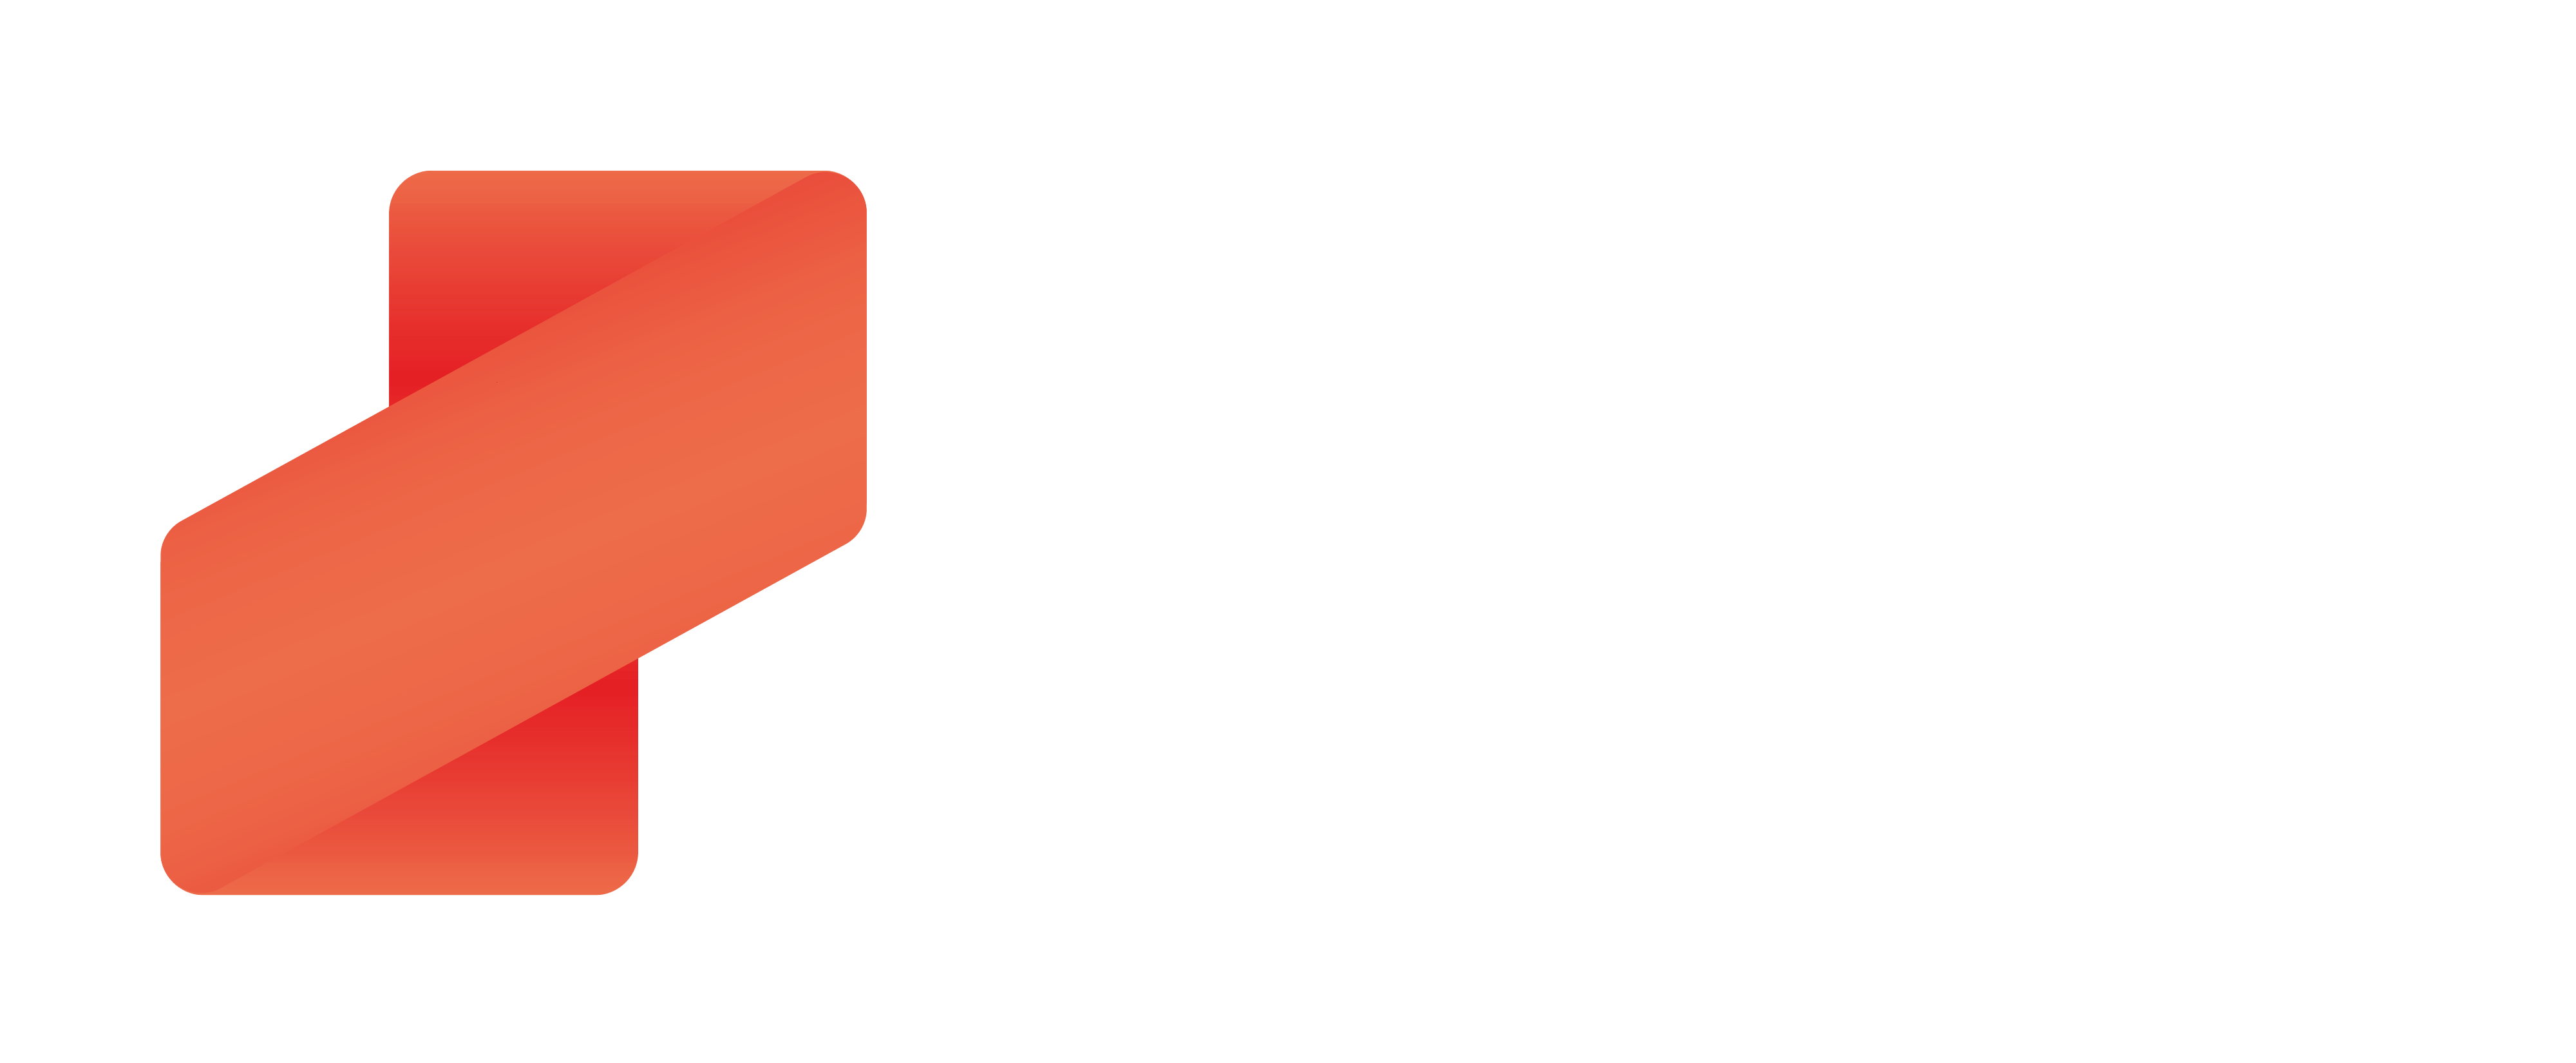 zazu logo